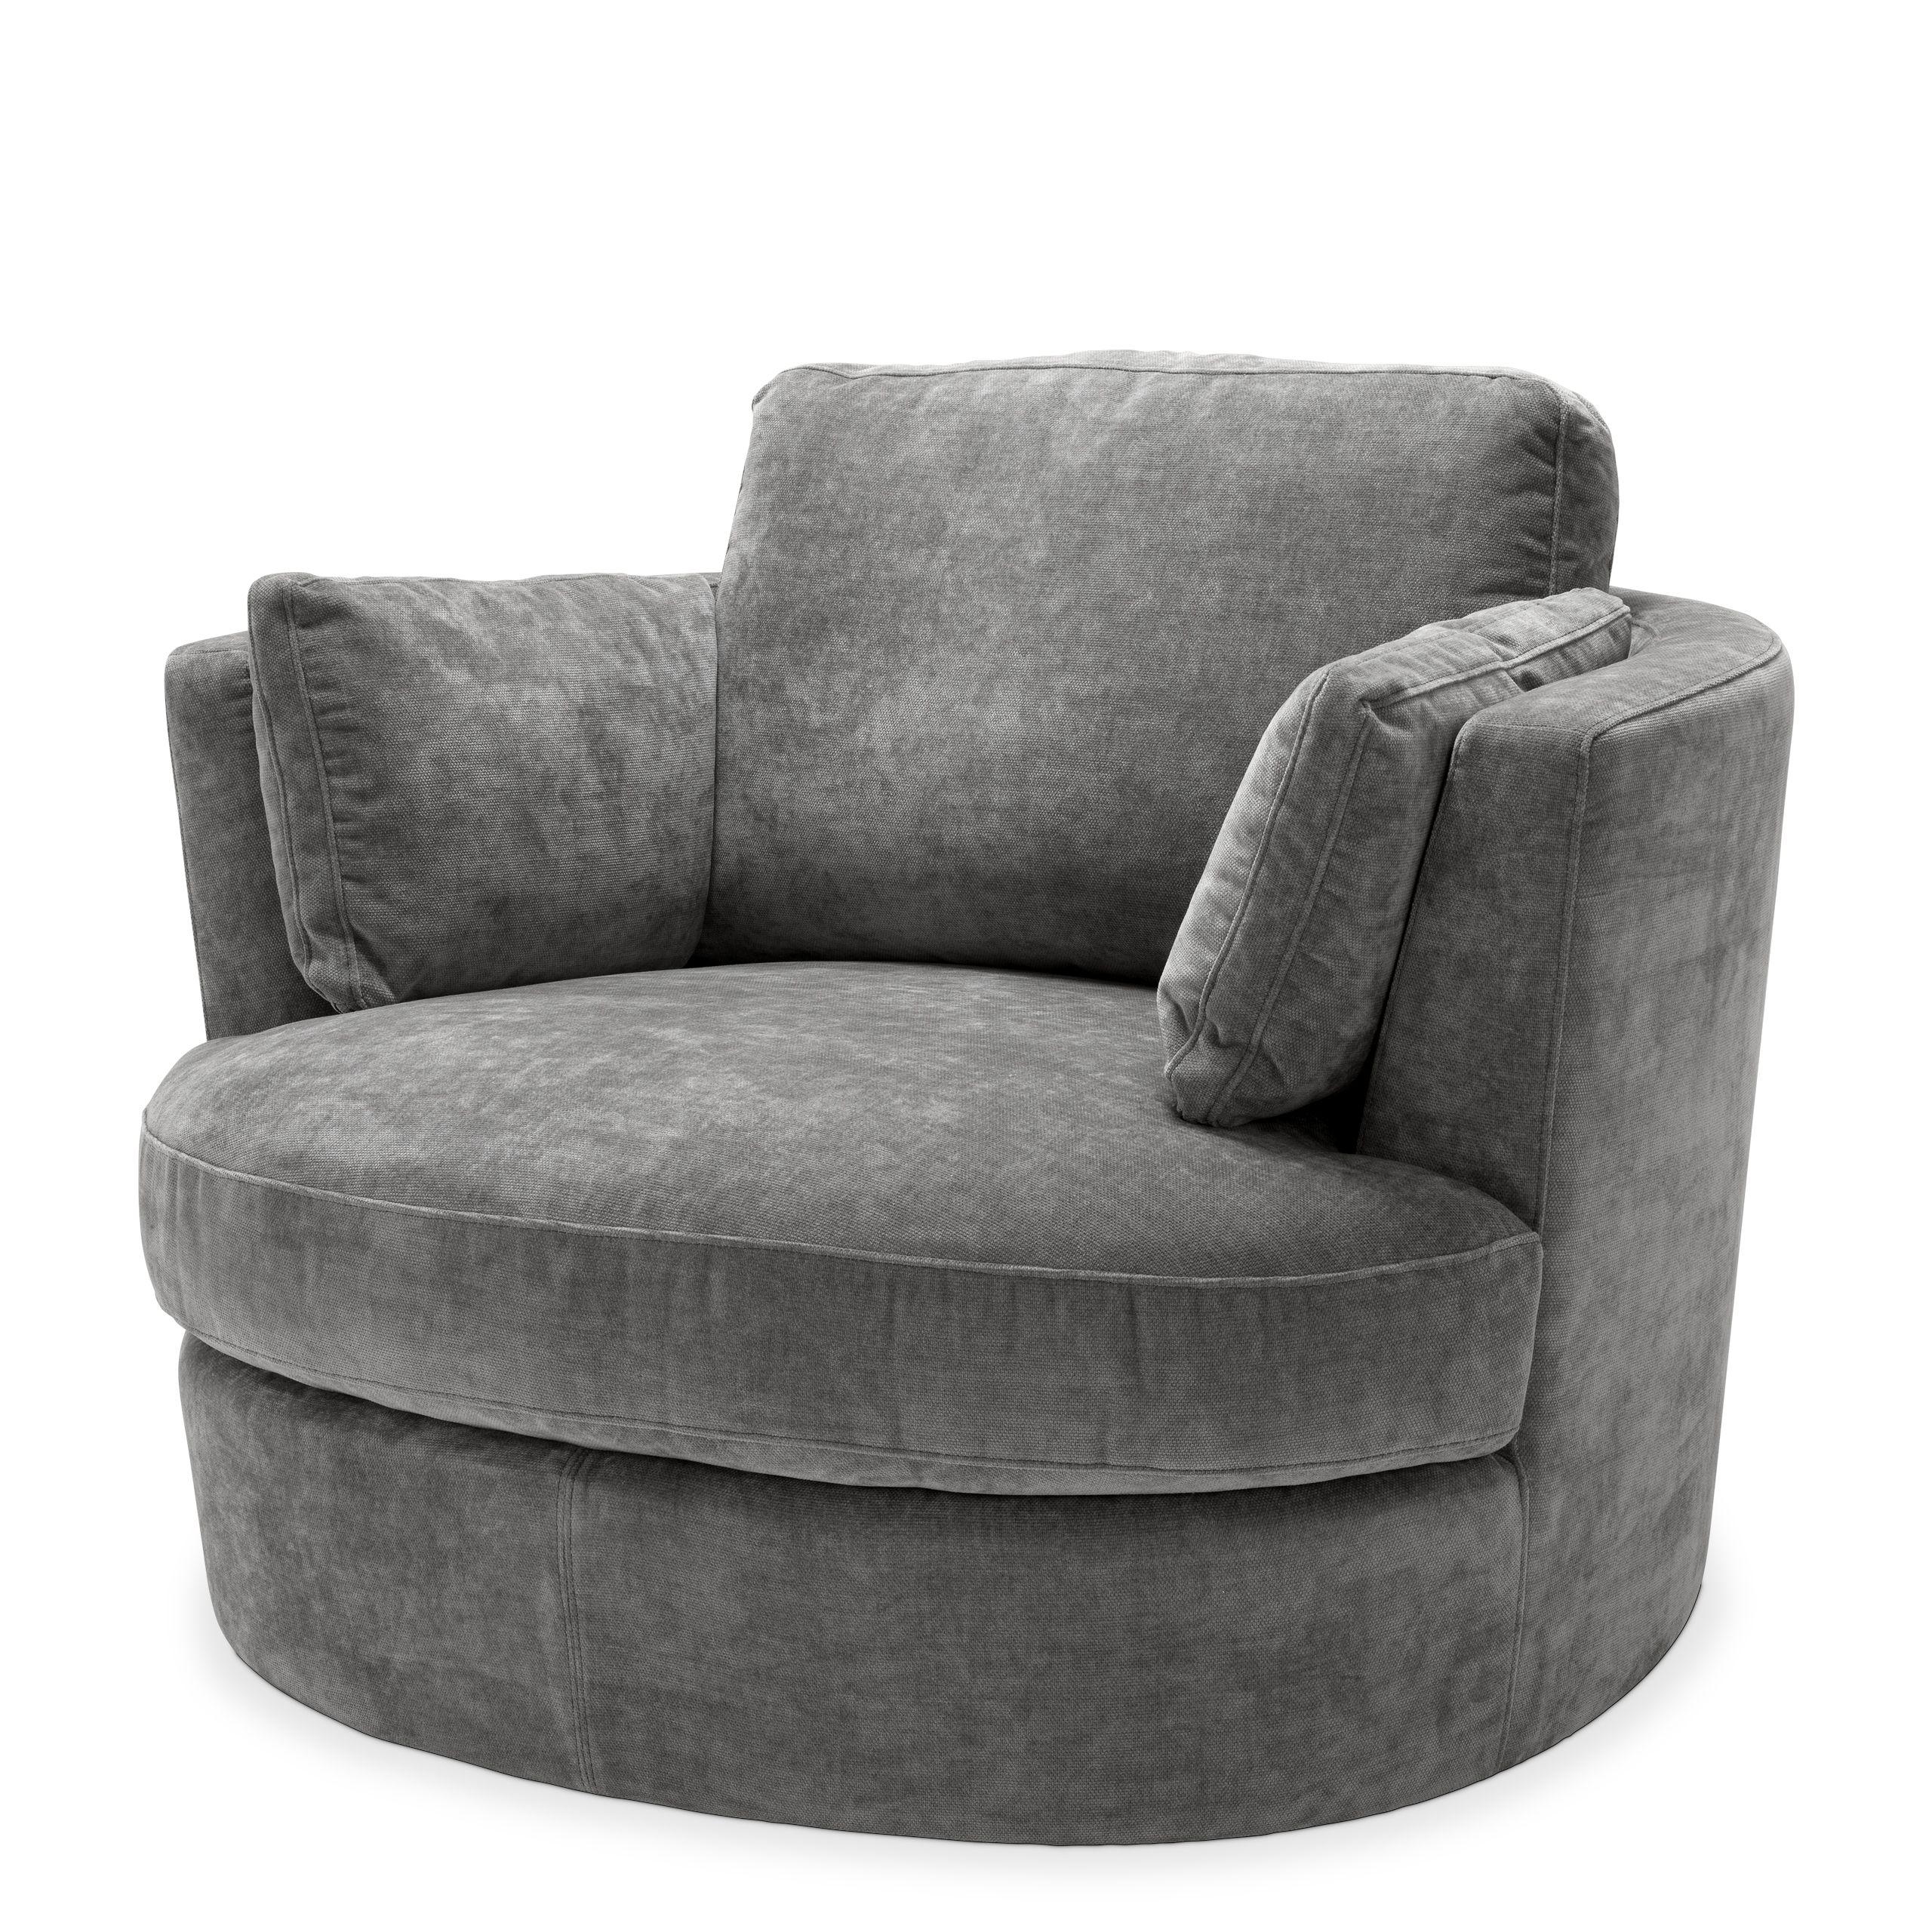 Купить Крутящееся кресло Swivel Chair Clarissa в интернет-магазине roooms.ru